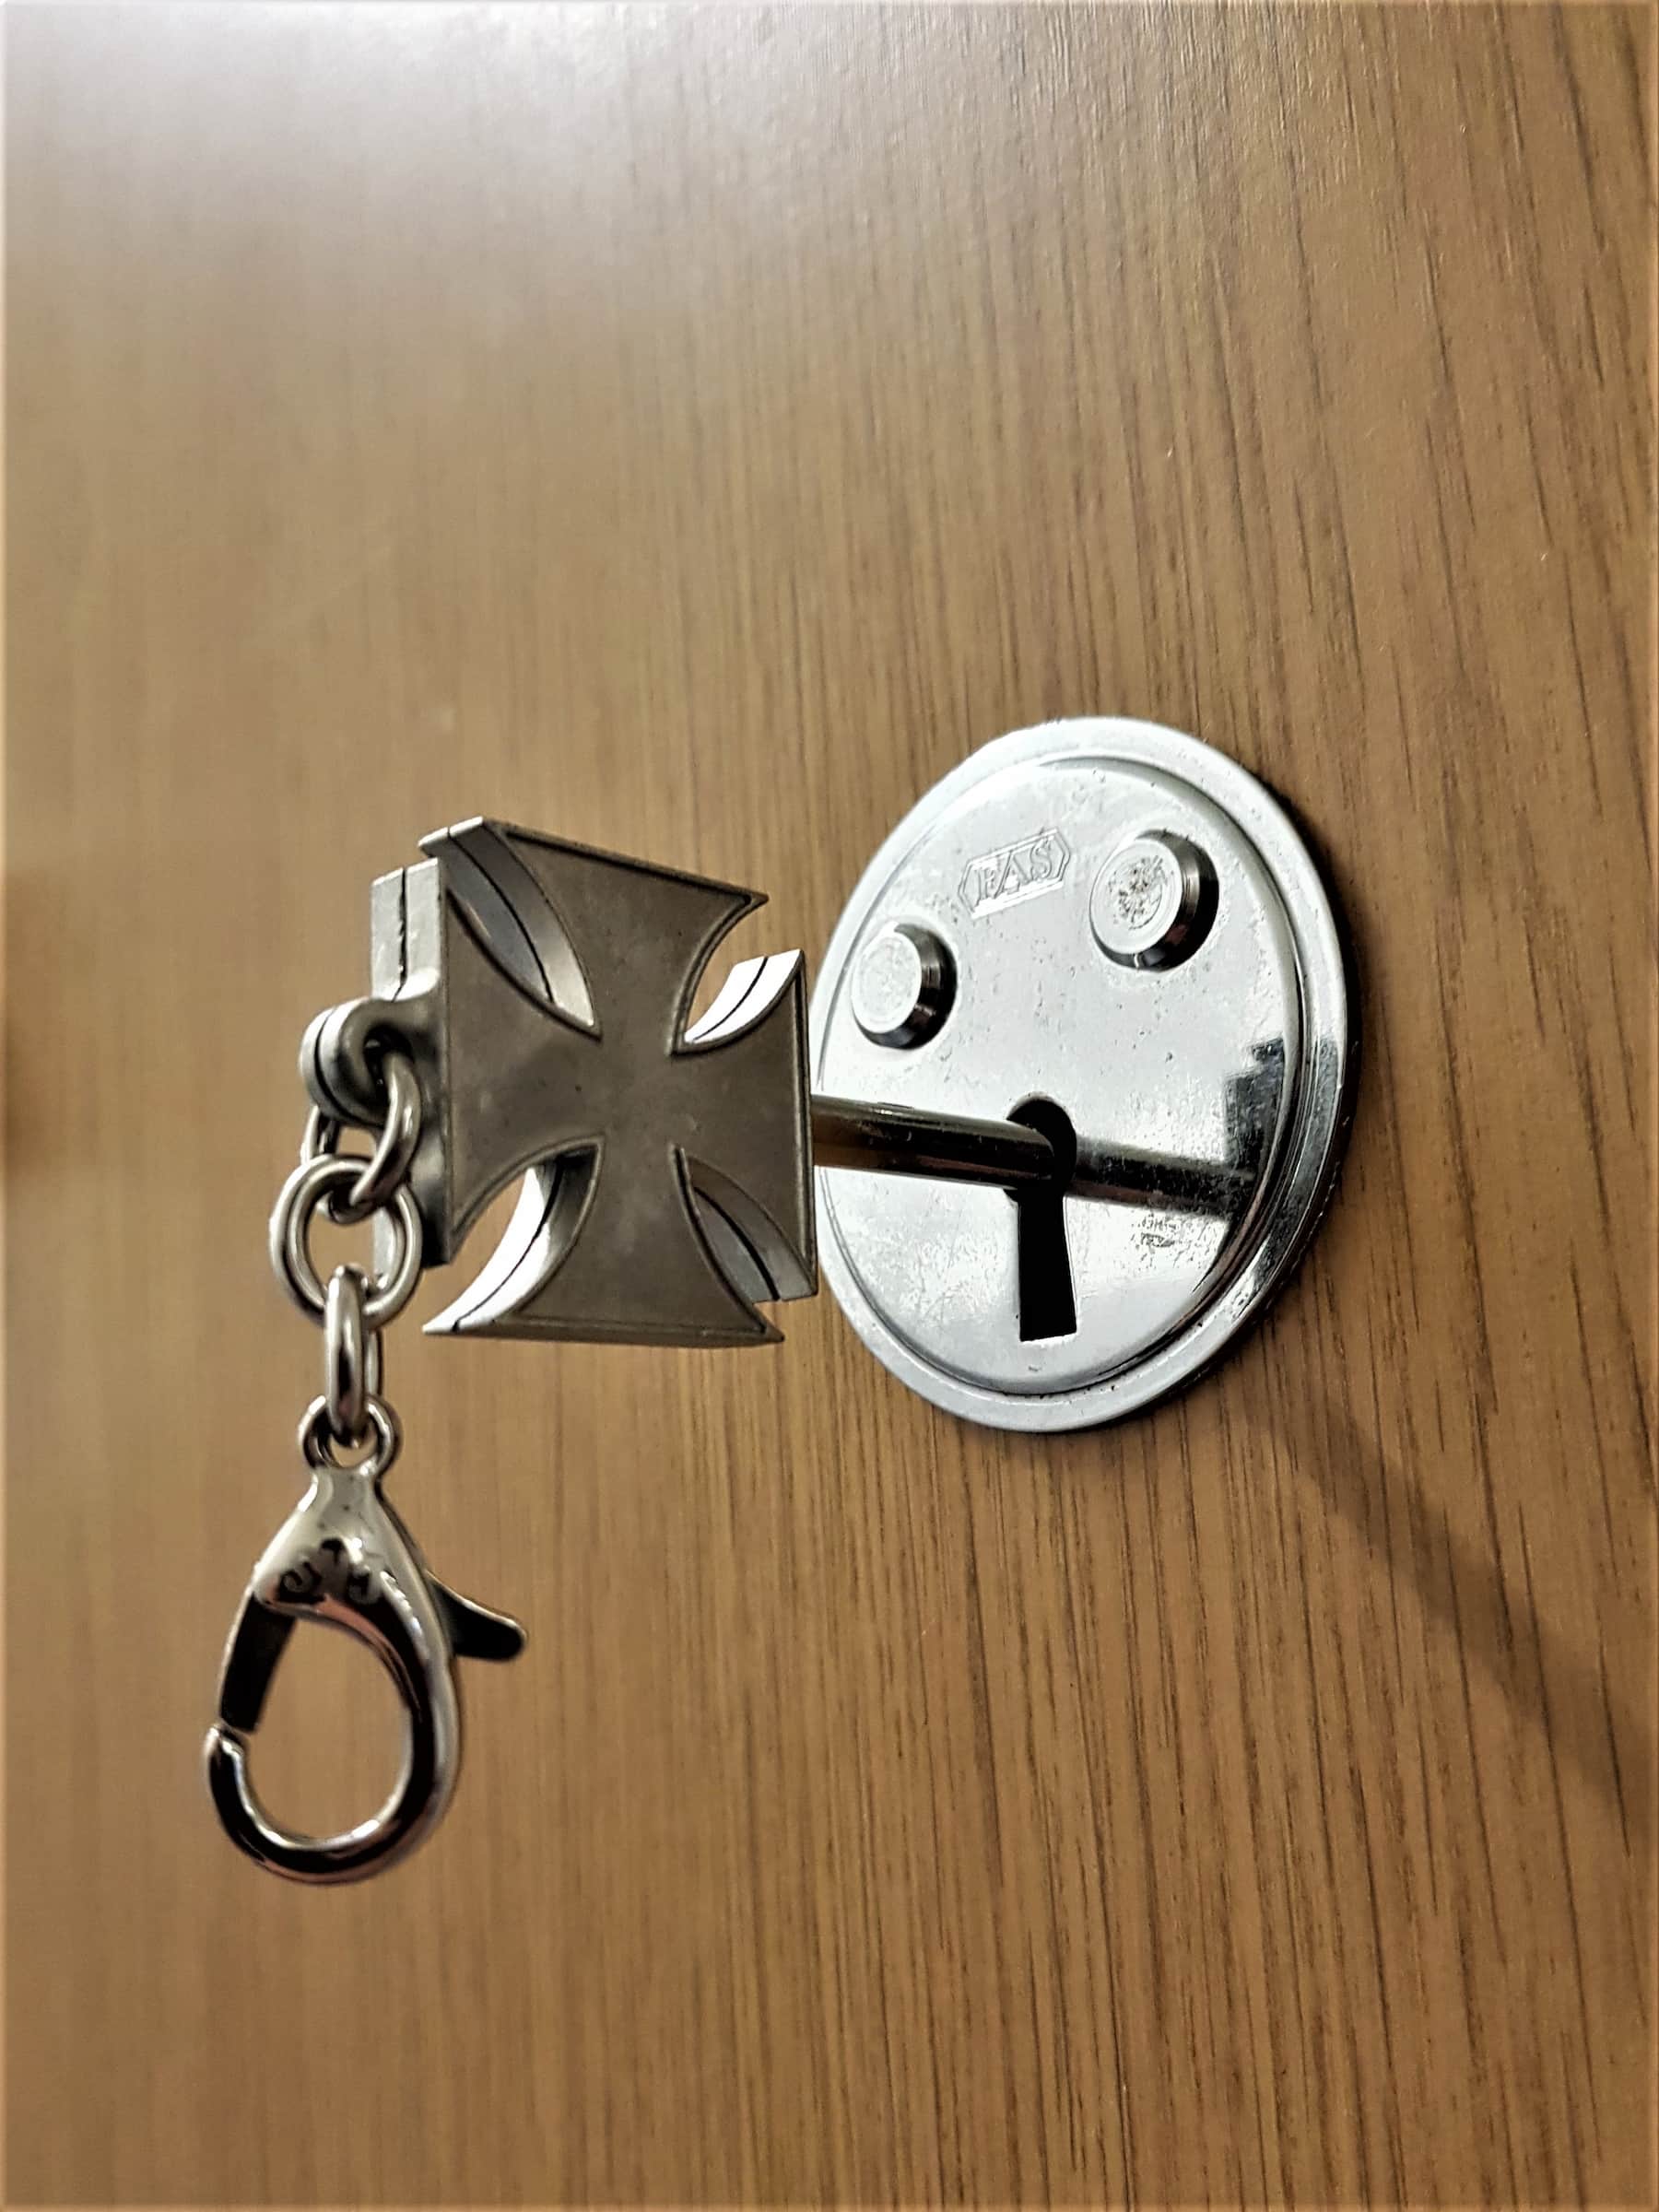 cool keys for houses cross